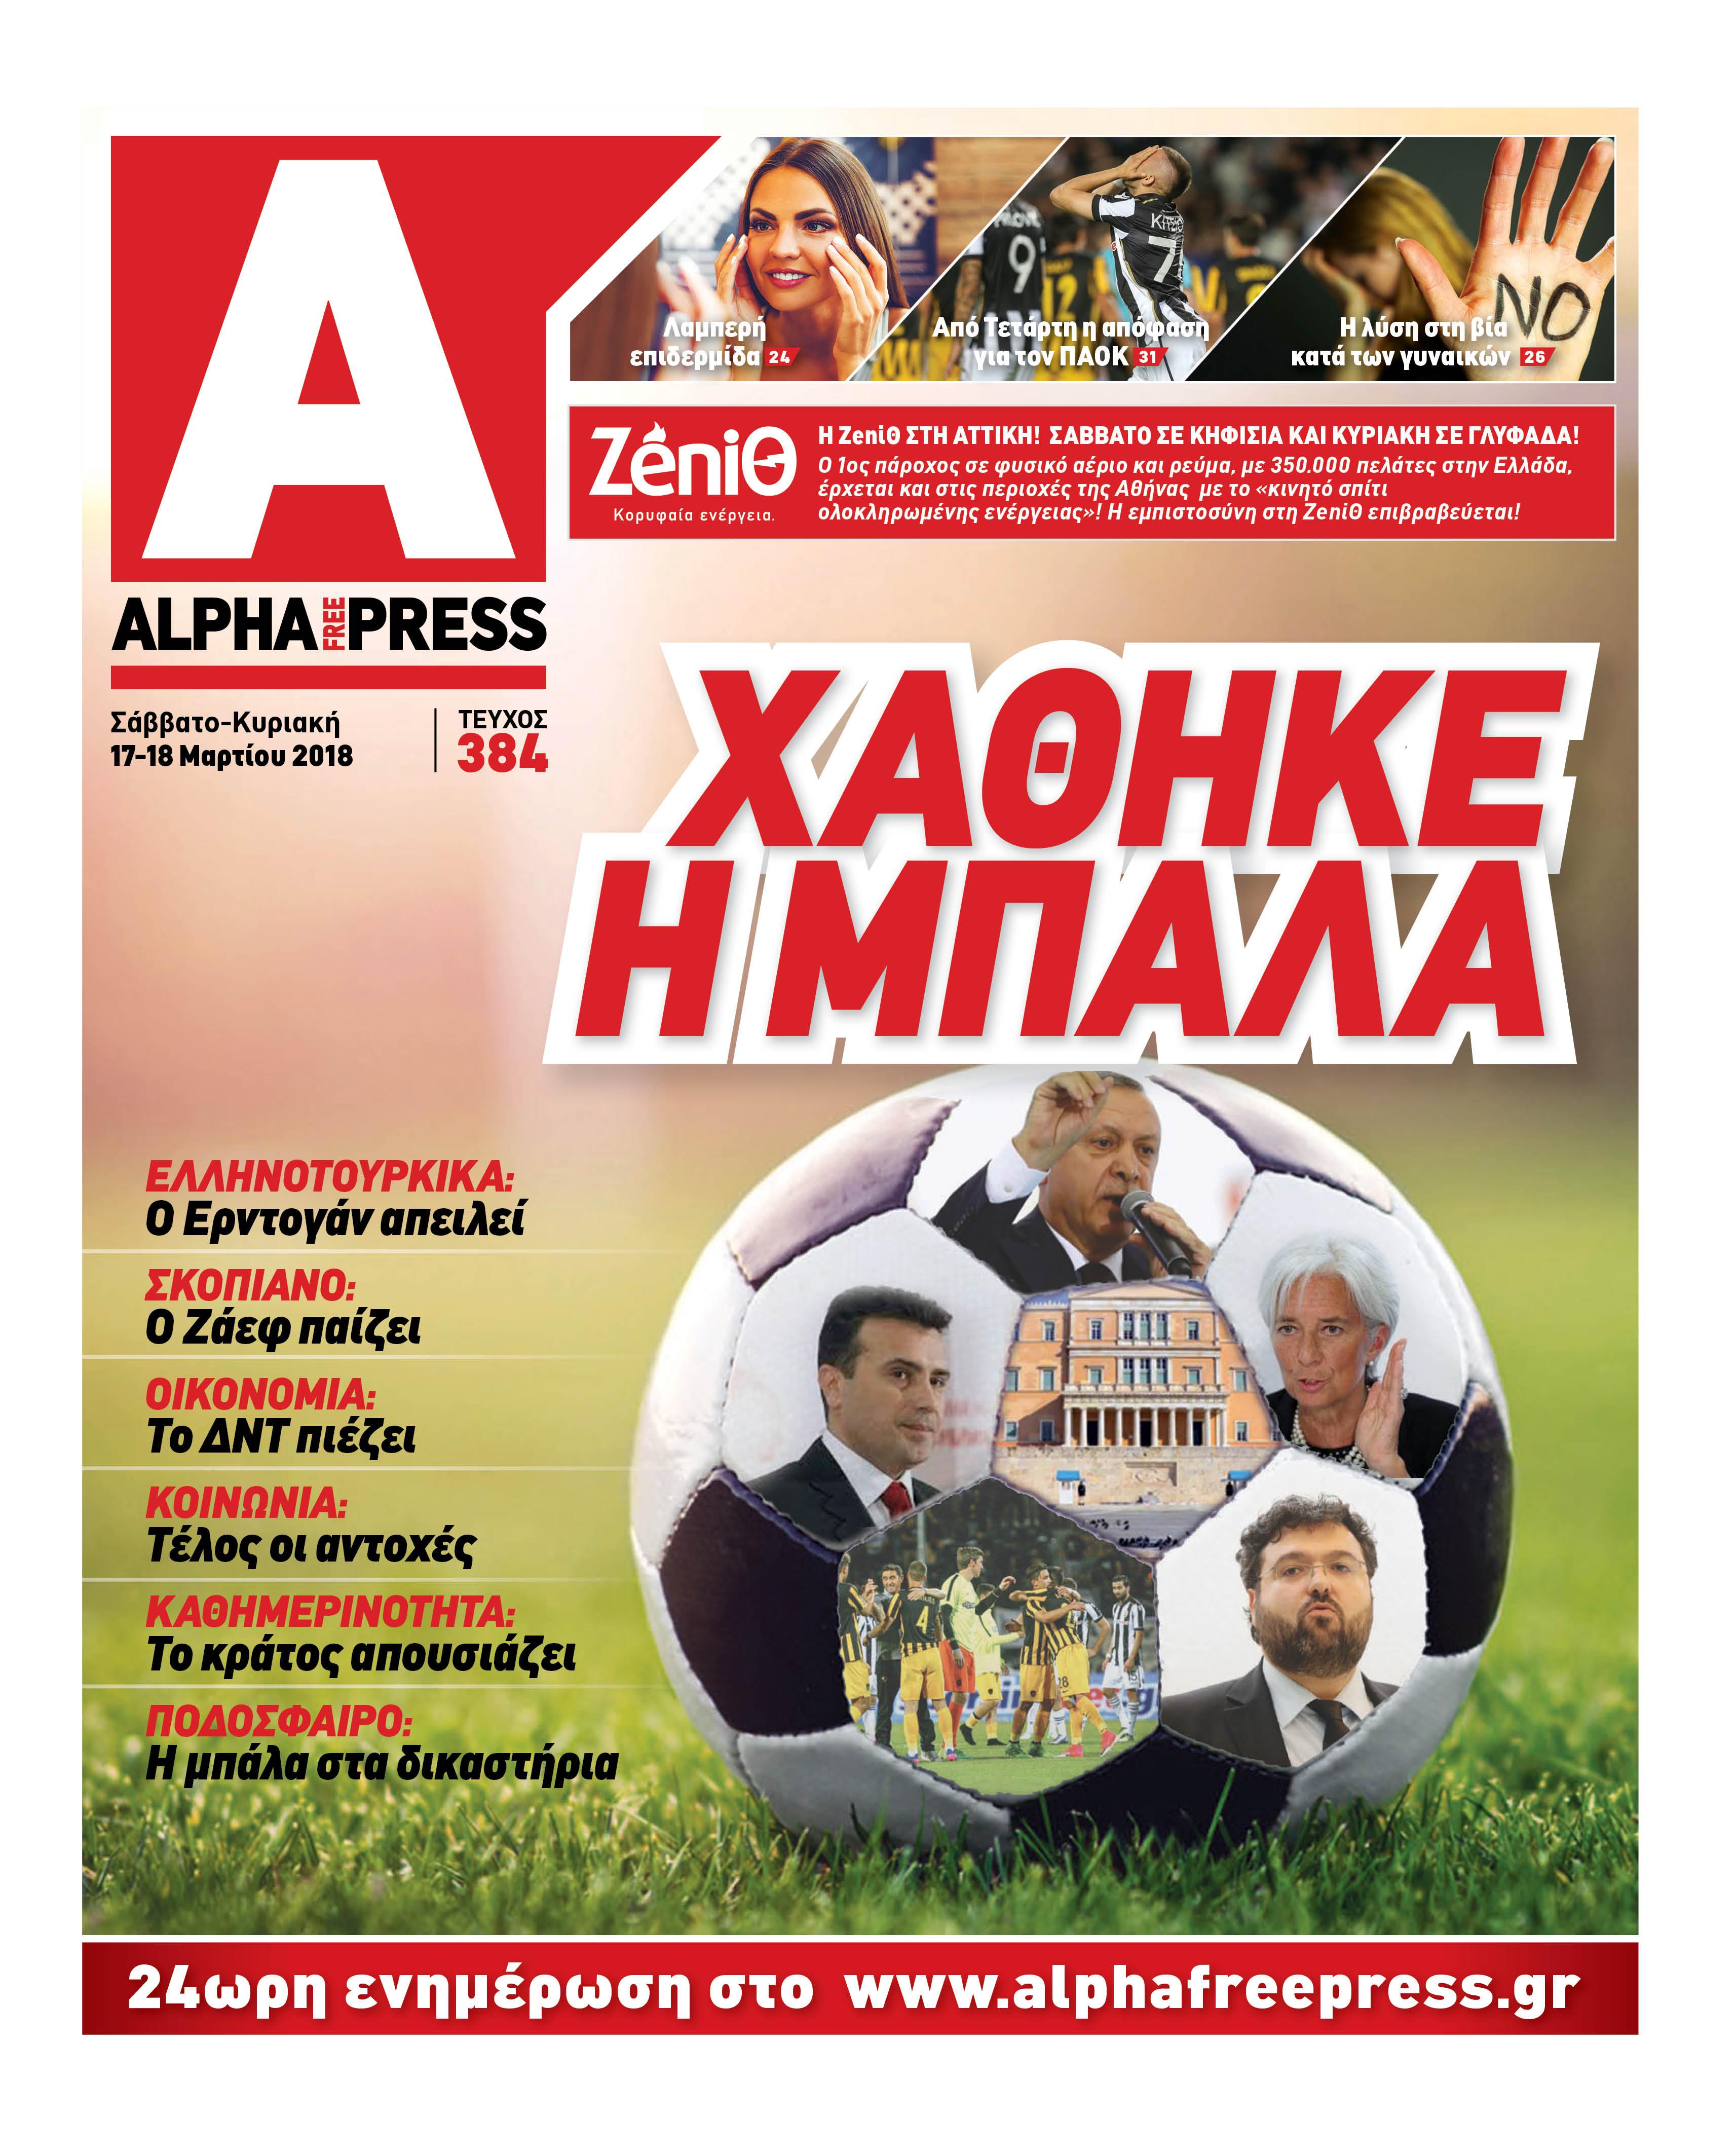 Πρωτοσέλιδο εφημερίδας Apha freepress